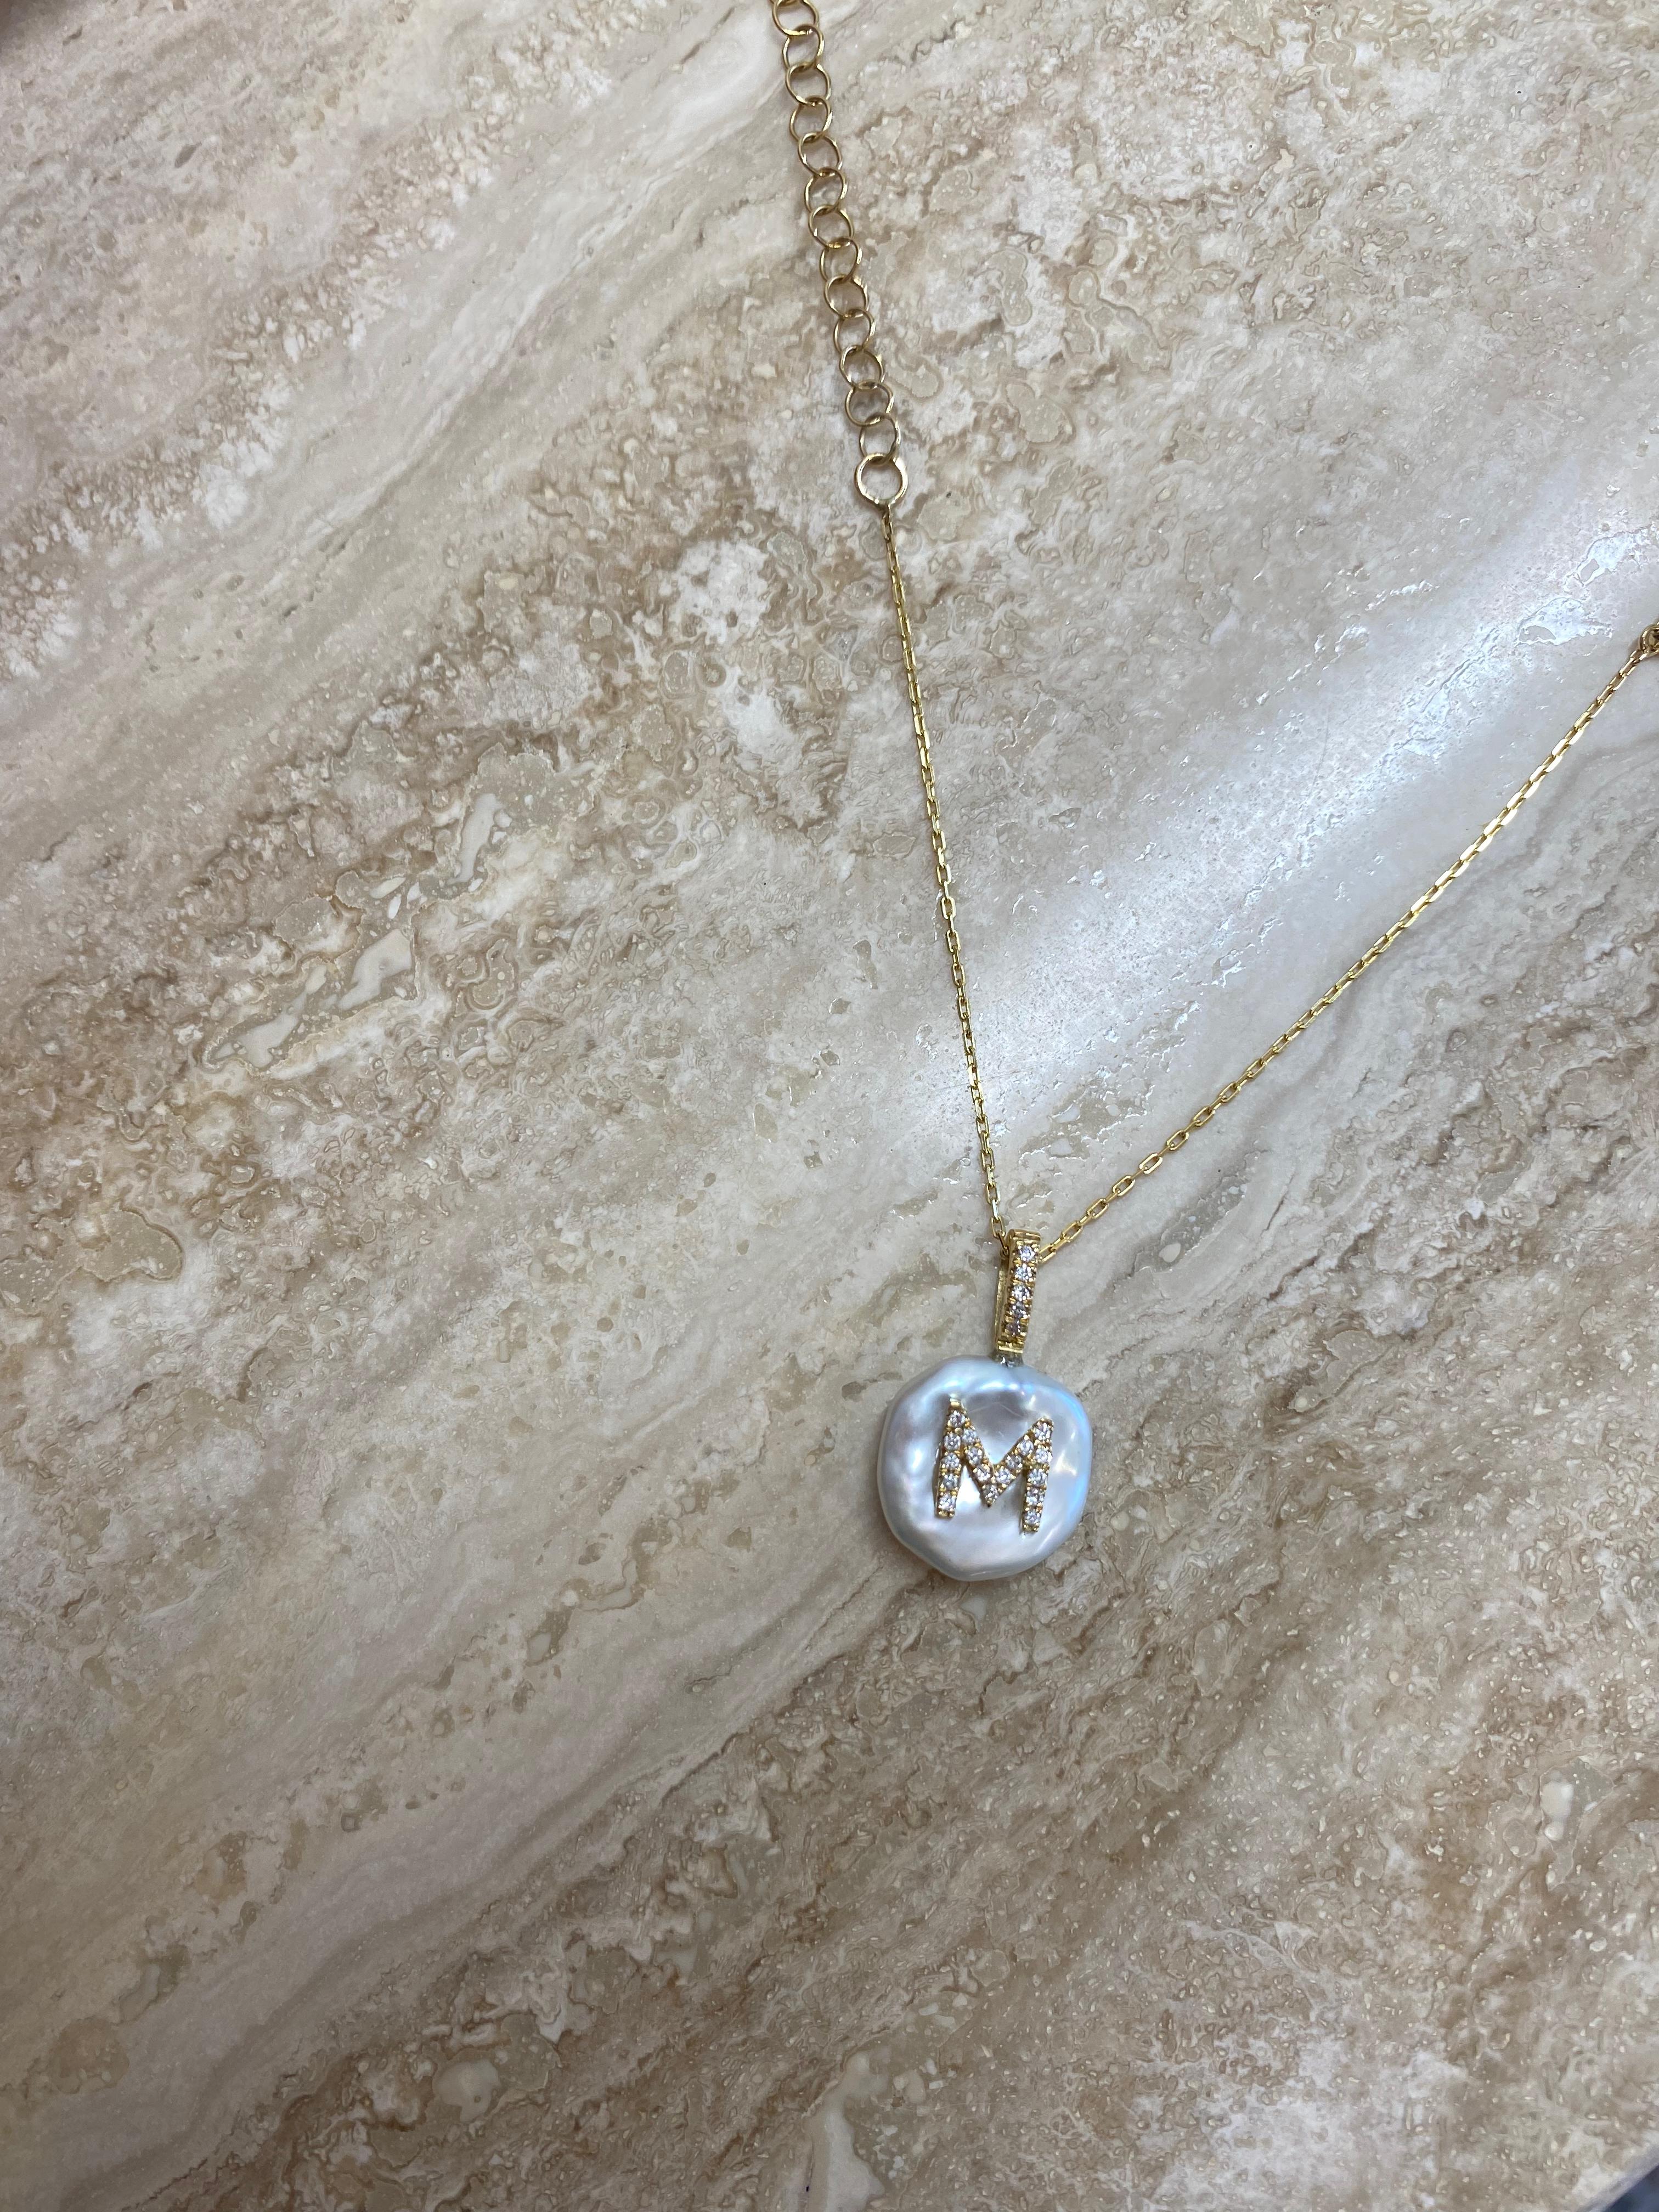 Dieser einzigartige Perlen-Charme zeigt den Buchstaben M auf einer Süßwasser-Keshi-Perle. Die Initiale ist aus 18 Karat Gelbgold gegossen und mit natürlich schimmernden Diamanten besetzt. 

Die Perle wird aufgrund ihres Glanzes und ihrer